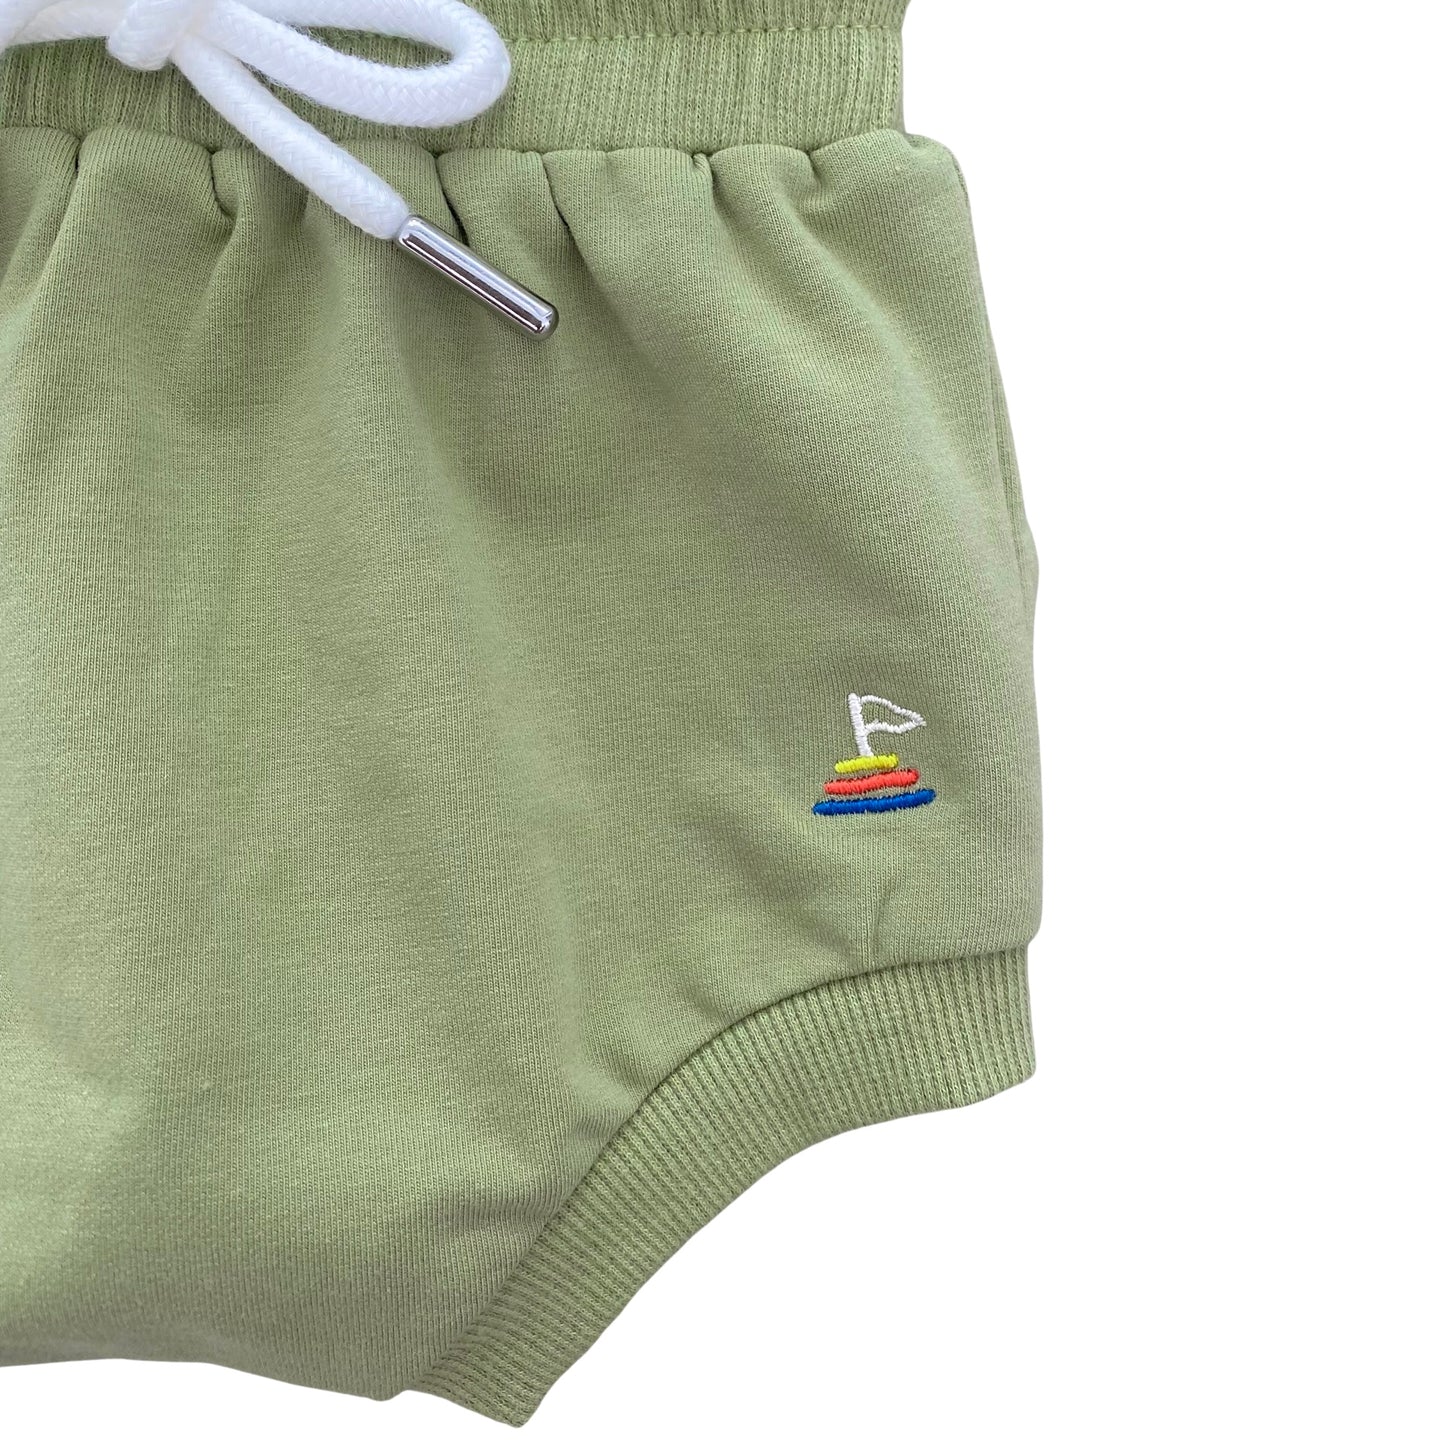 Unisex Signature Baby Shorts